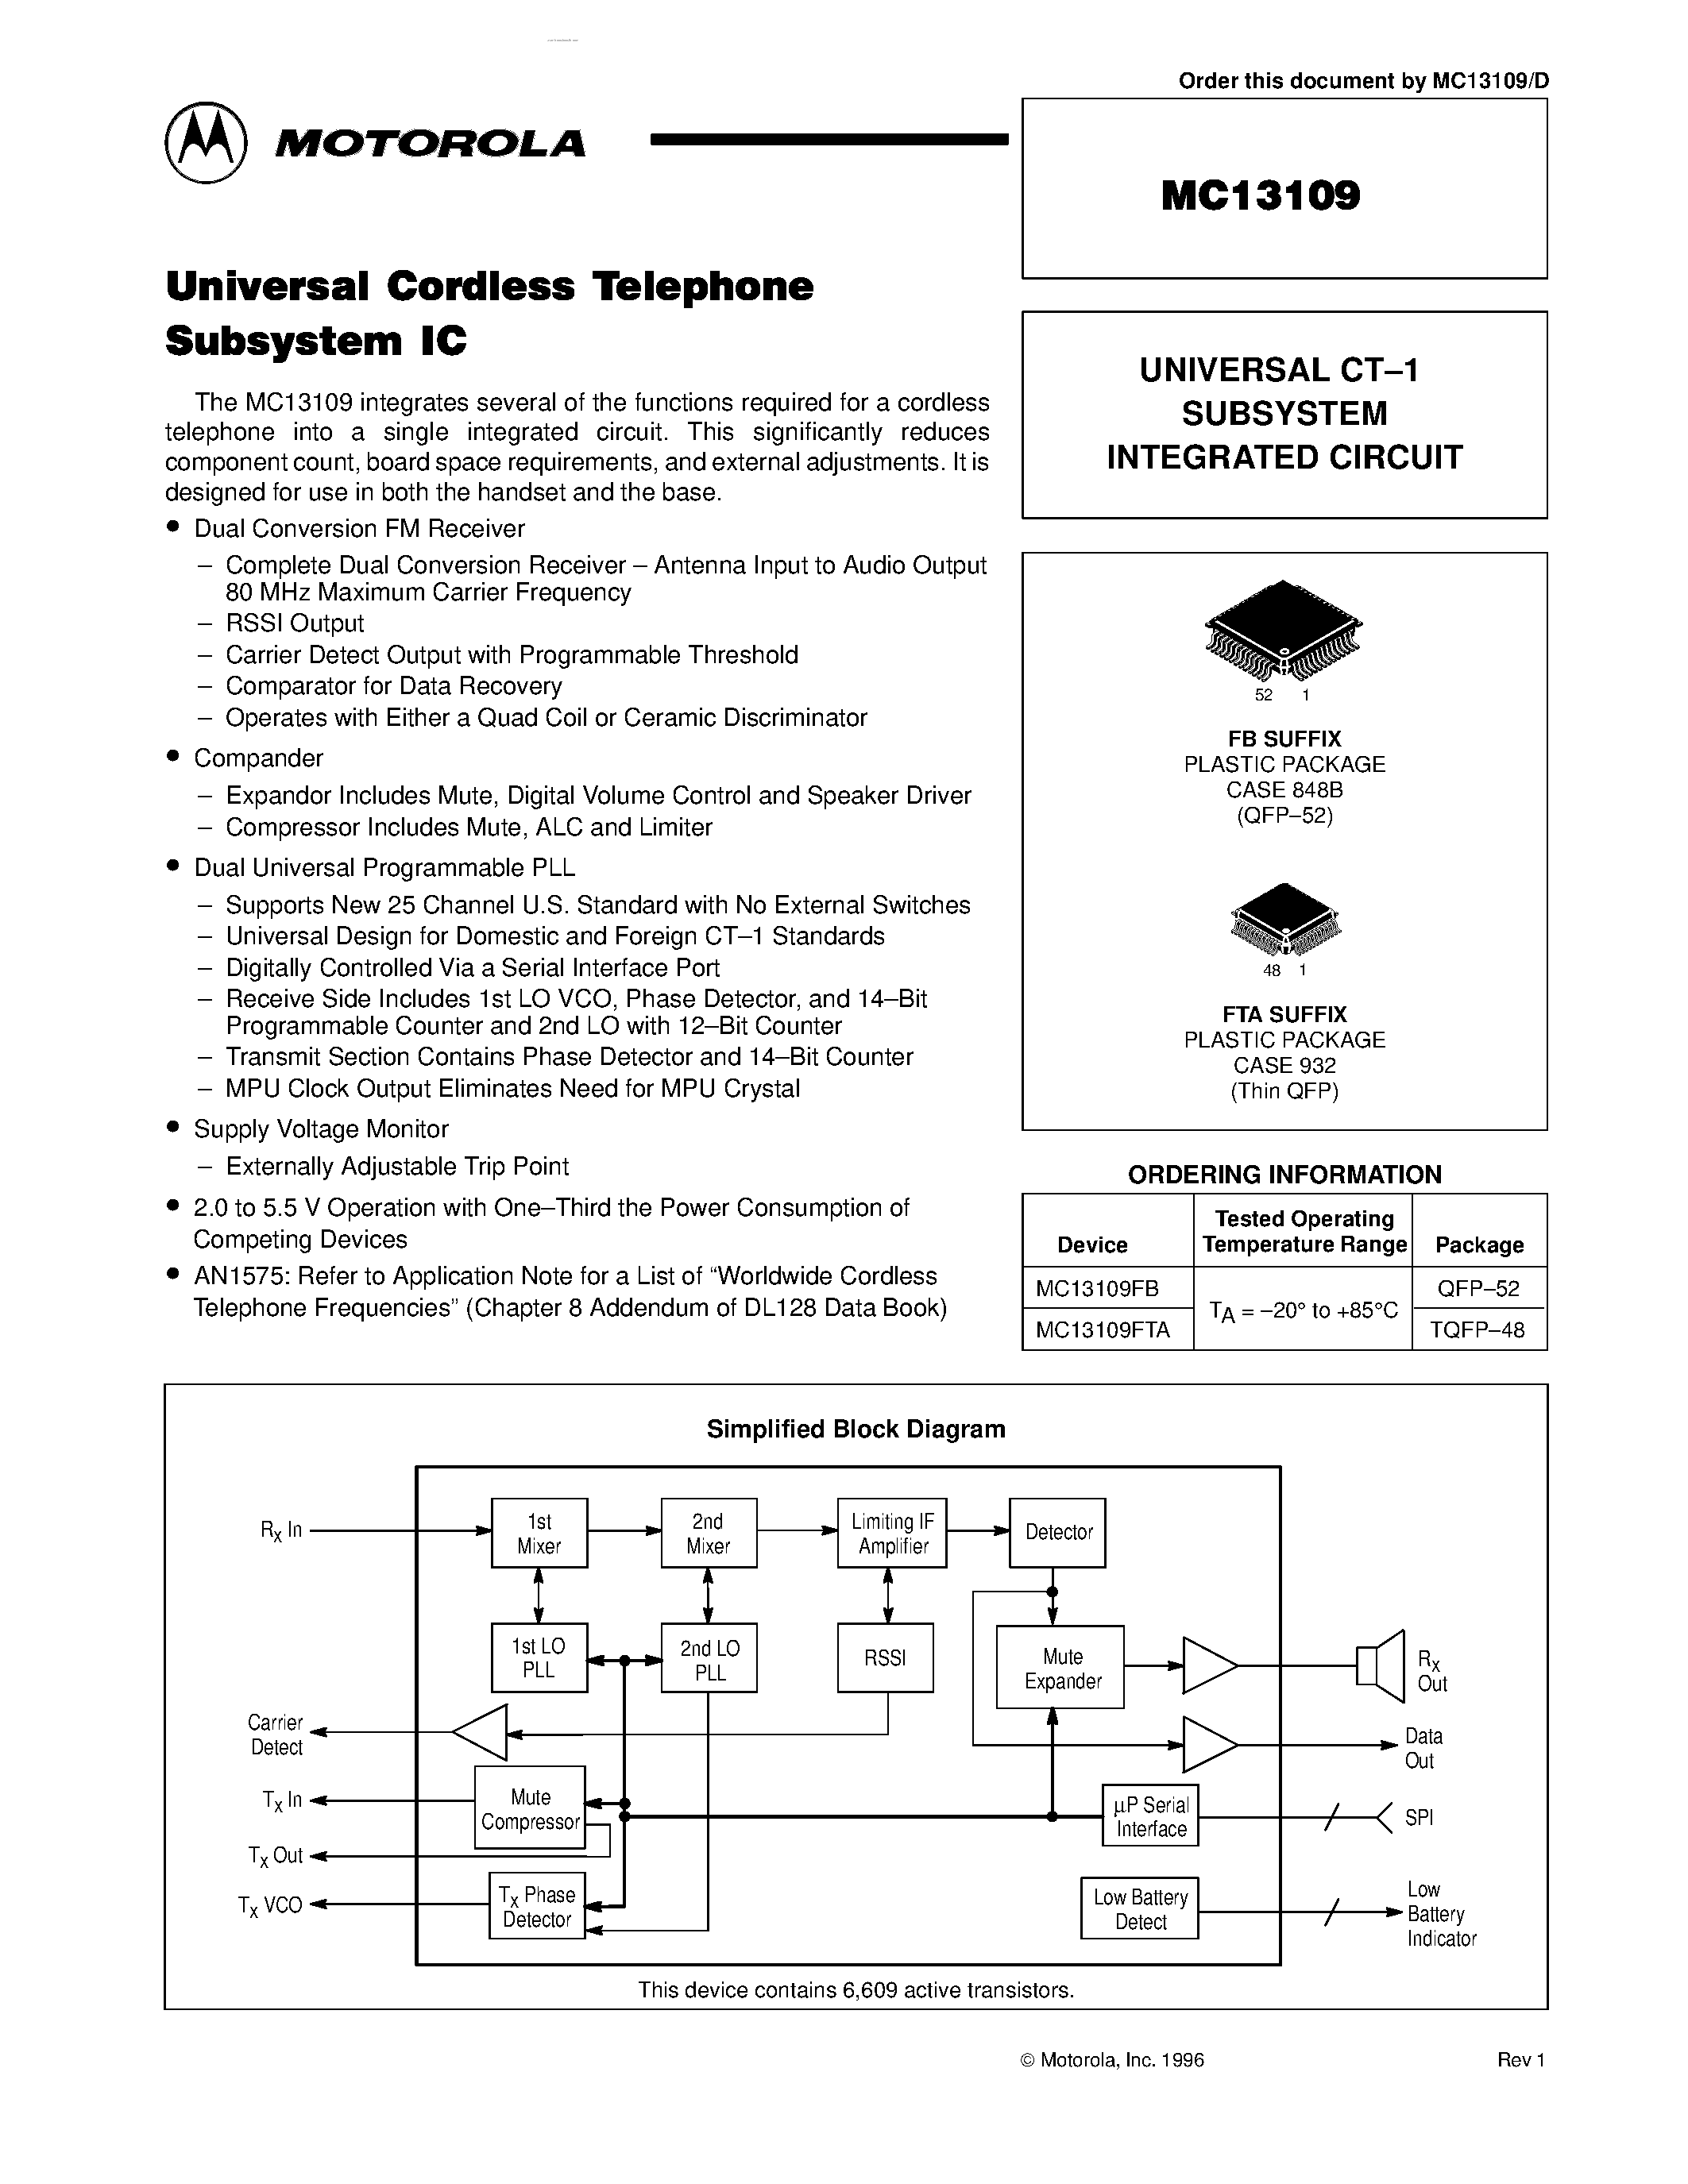 Datasheet MC13109 - Universal Cordless Telephone Subsystem IC page 1